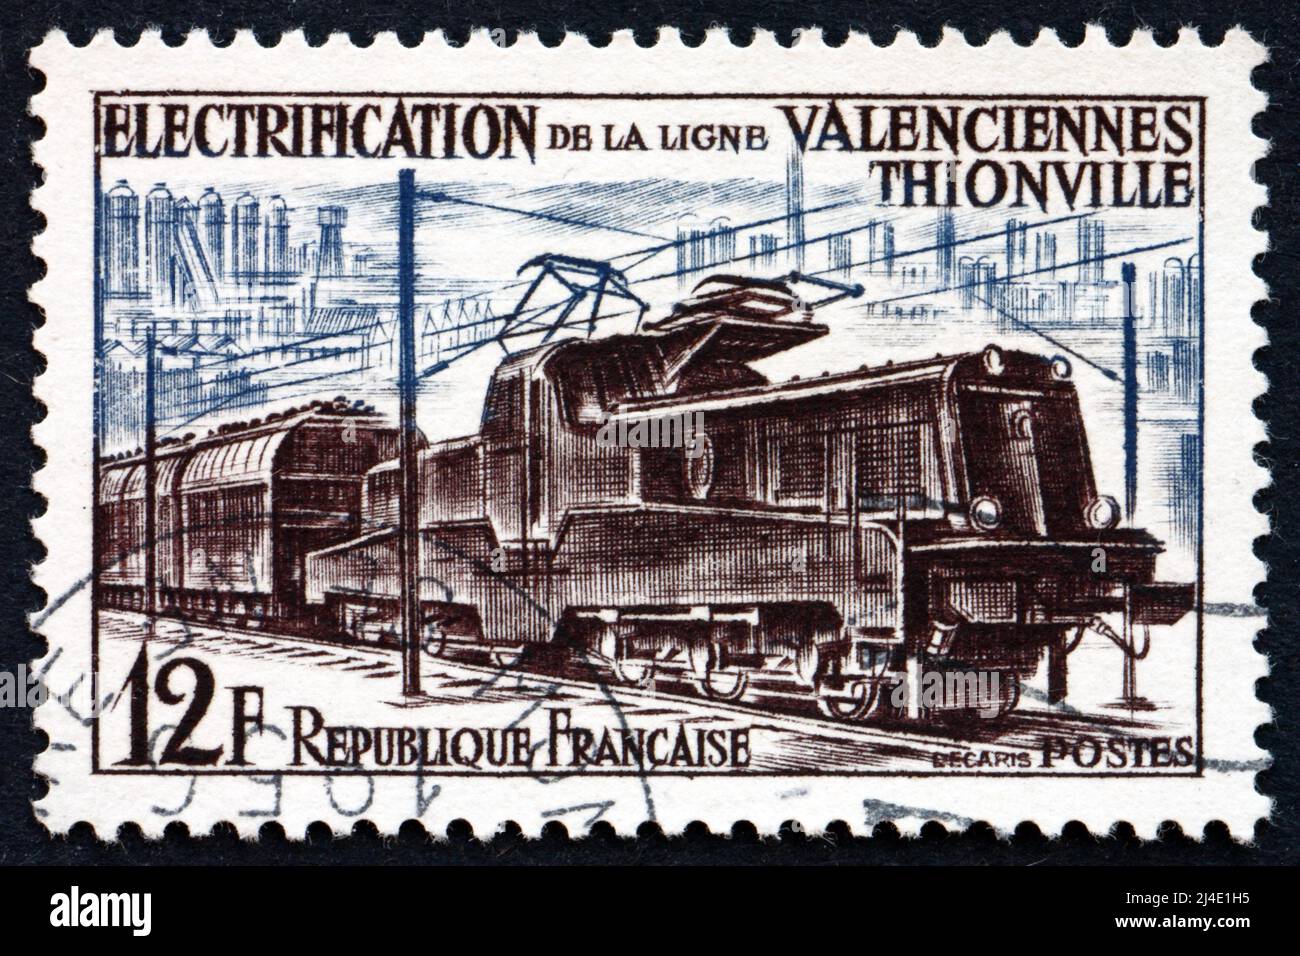 FRANCIA - ALREDEDOR de 1955: Un sello impreso en Francia muestra Tren Eléctrico, Electrificación de la Línea Ferroviaria Valenciennes-Thionville, alrededor de 1987 Foto de stock